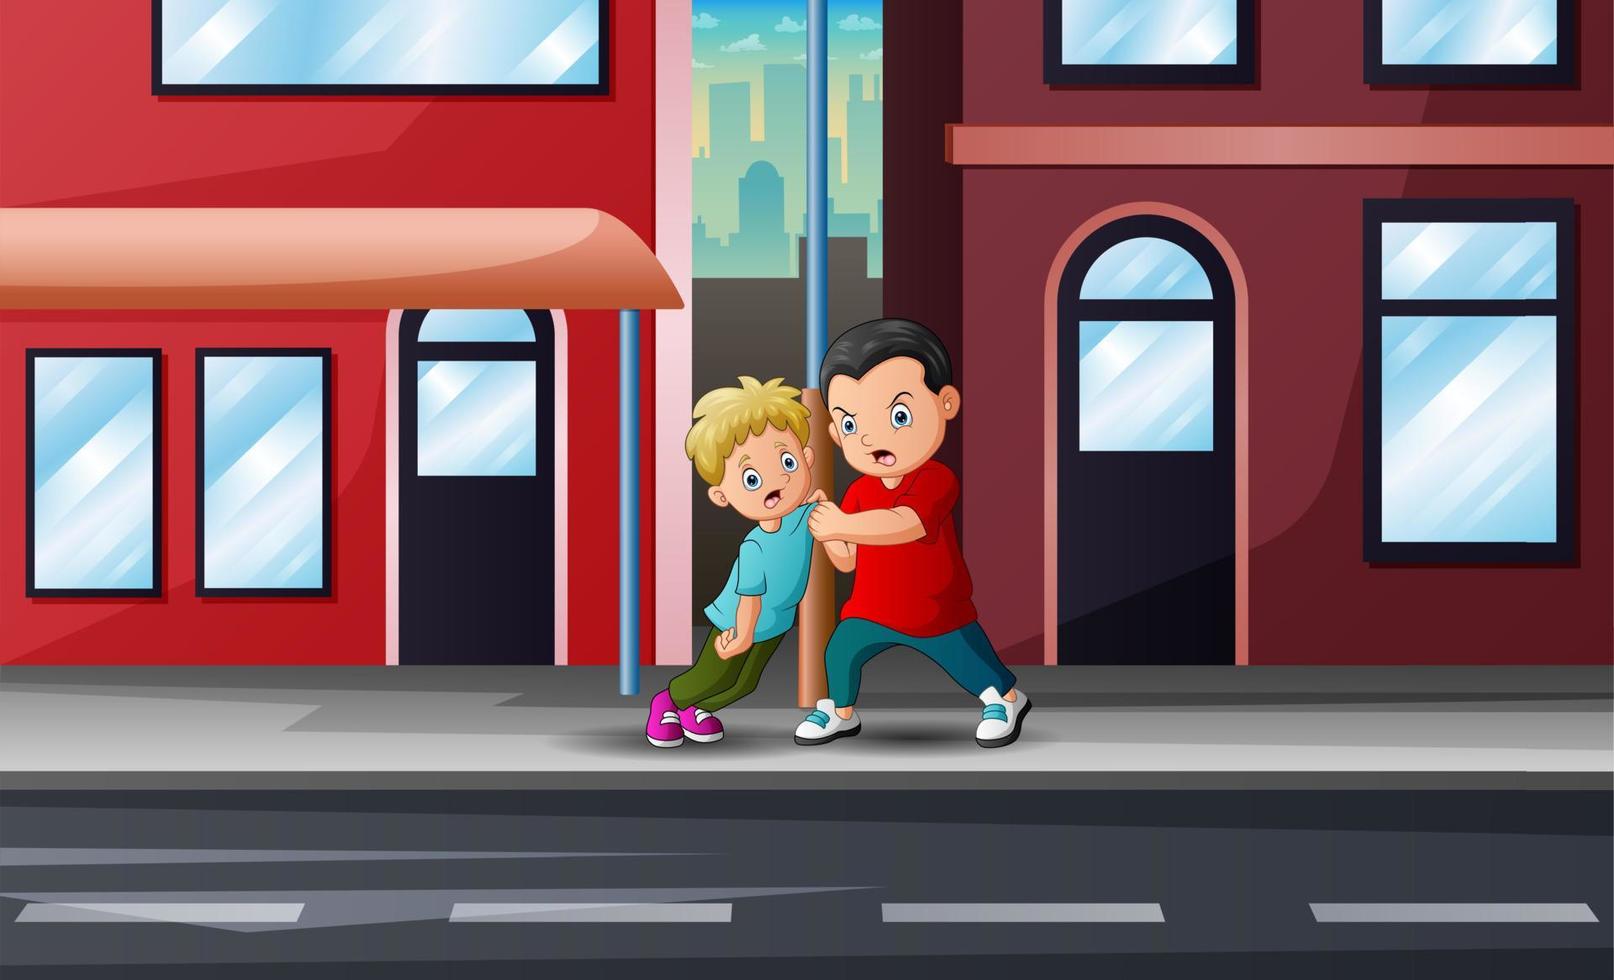 dessin animé garçon intimidant petit garçon sur l'illustration de la rue vecteur